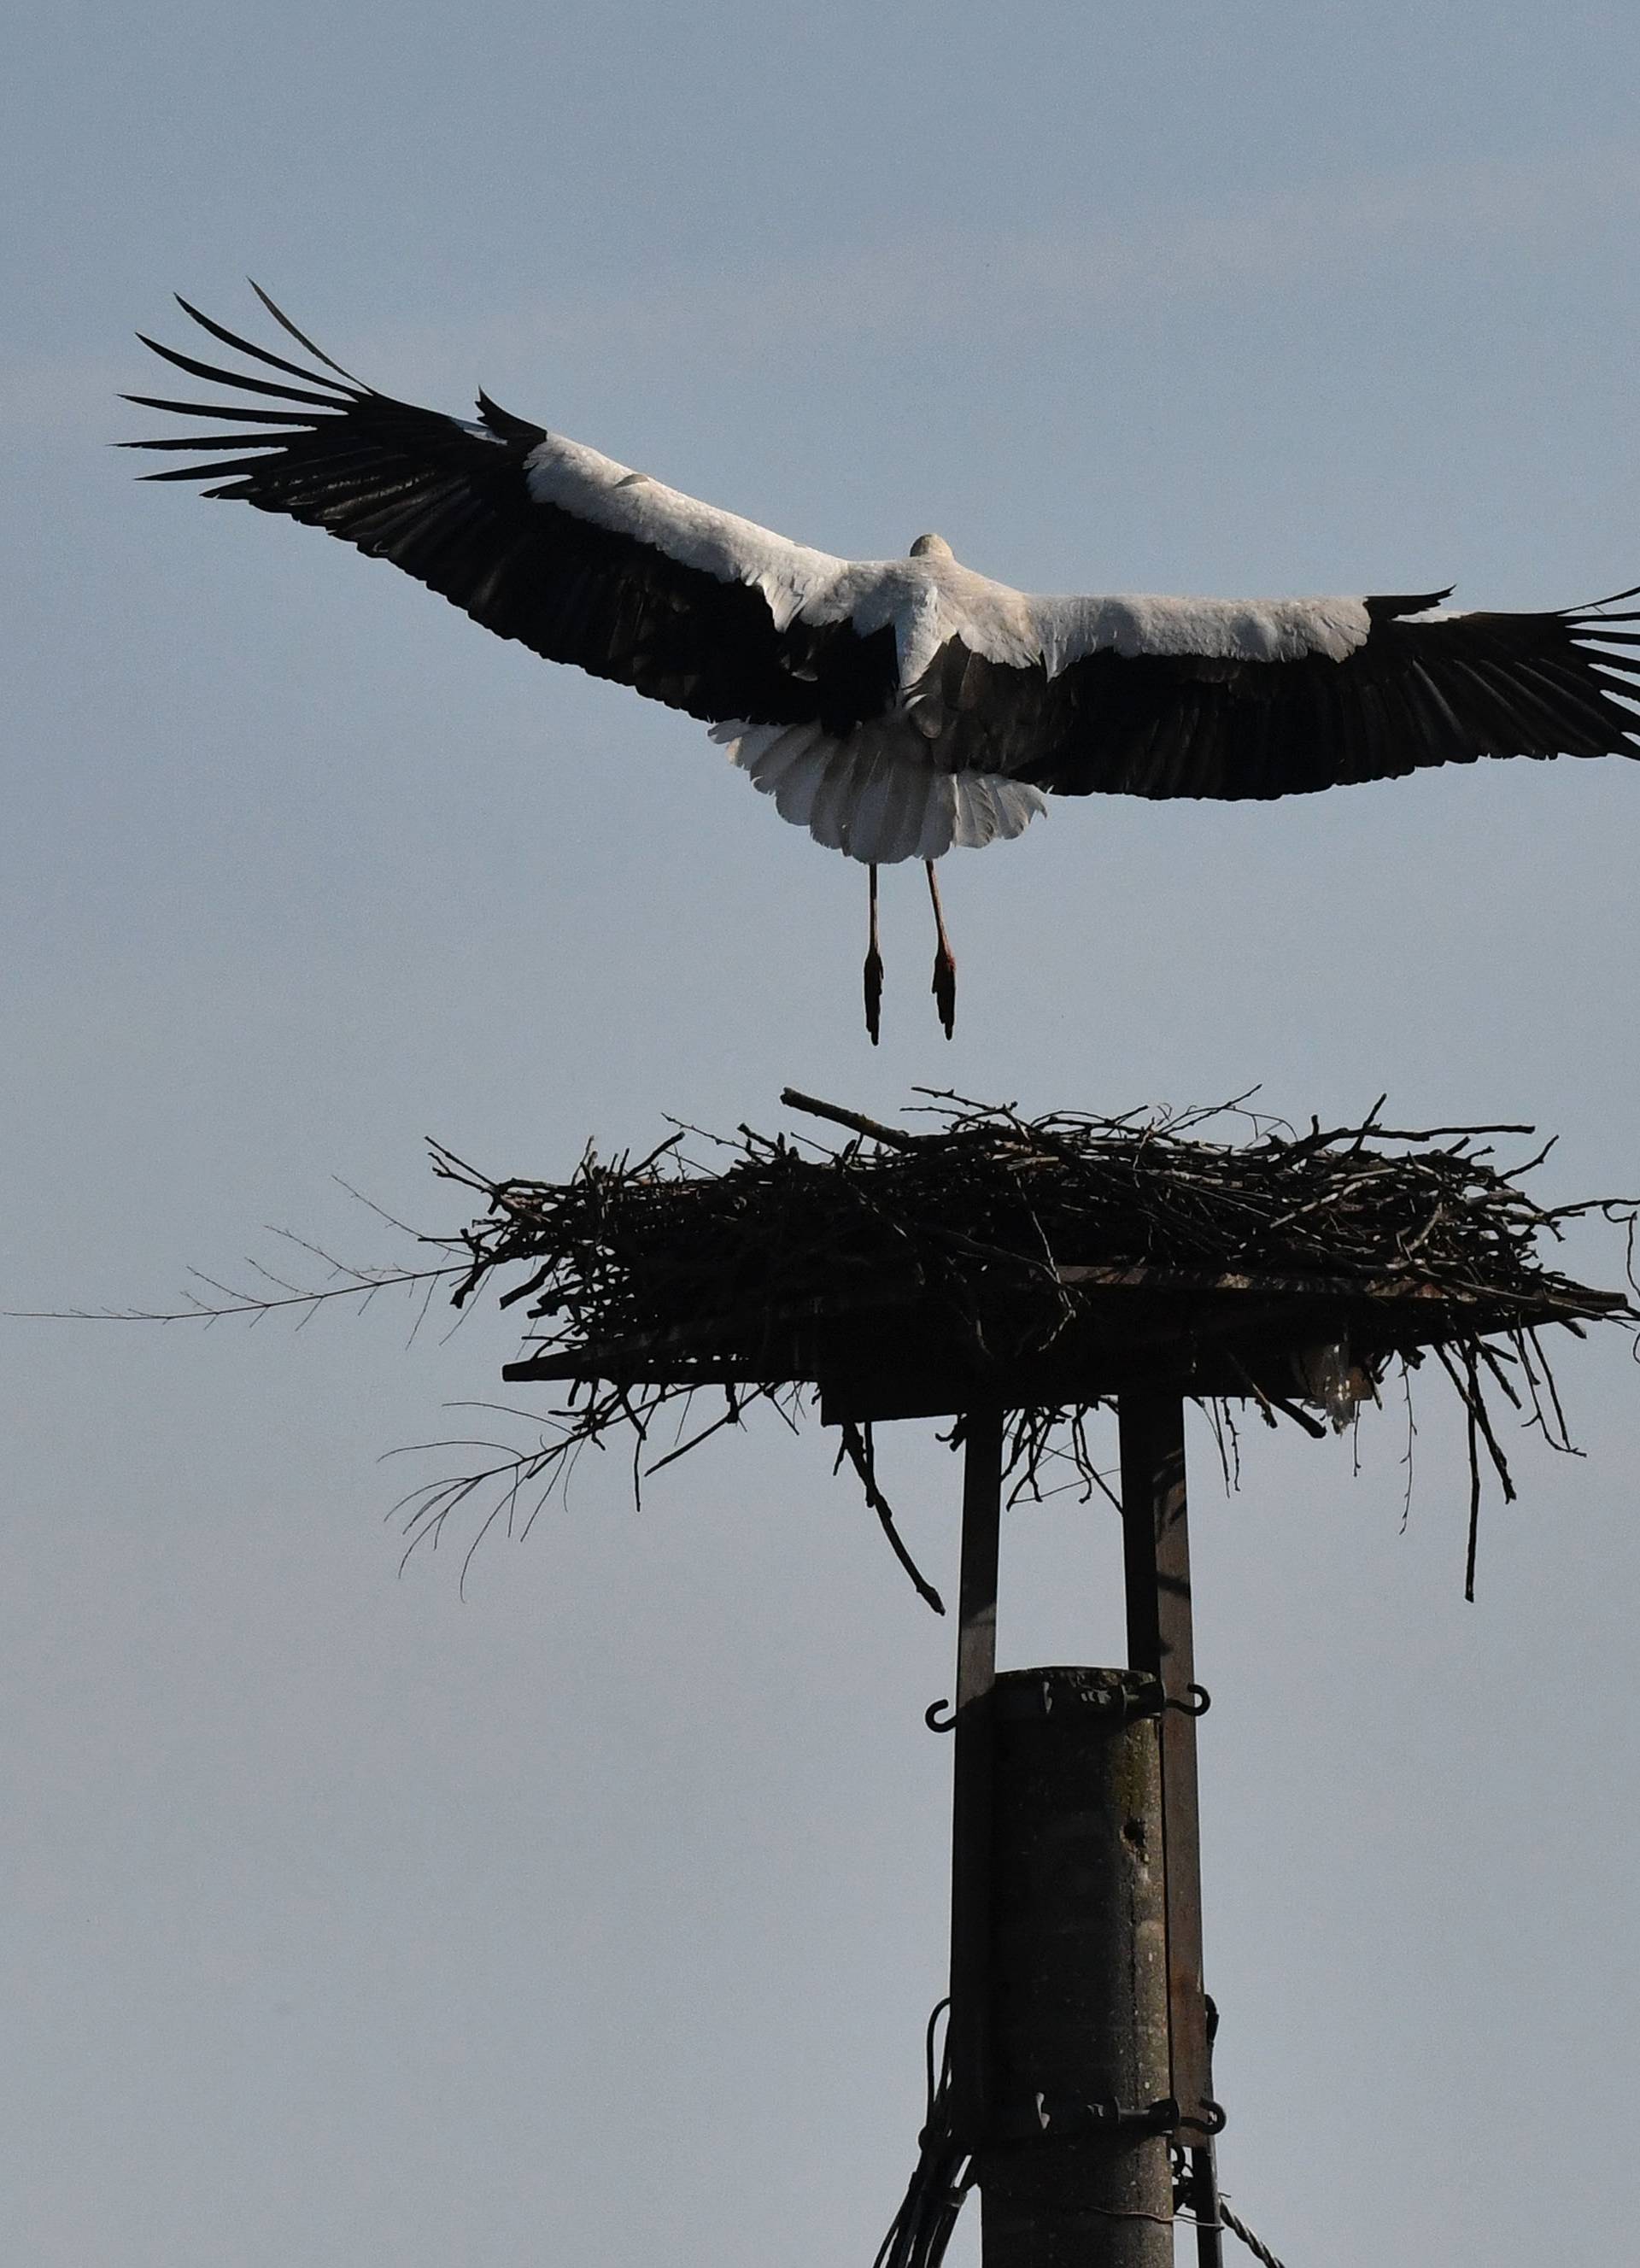 Rode se vraćaju u Brodski Varoš, a Malena slomljenog krila sama gradi svoje gnijezdo